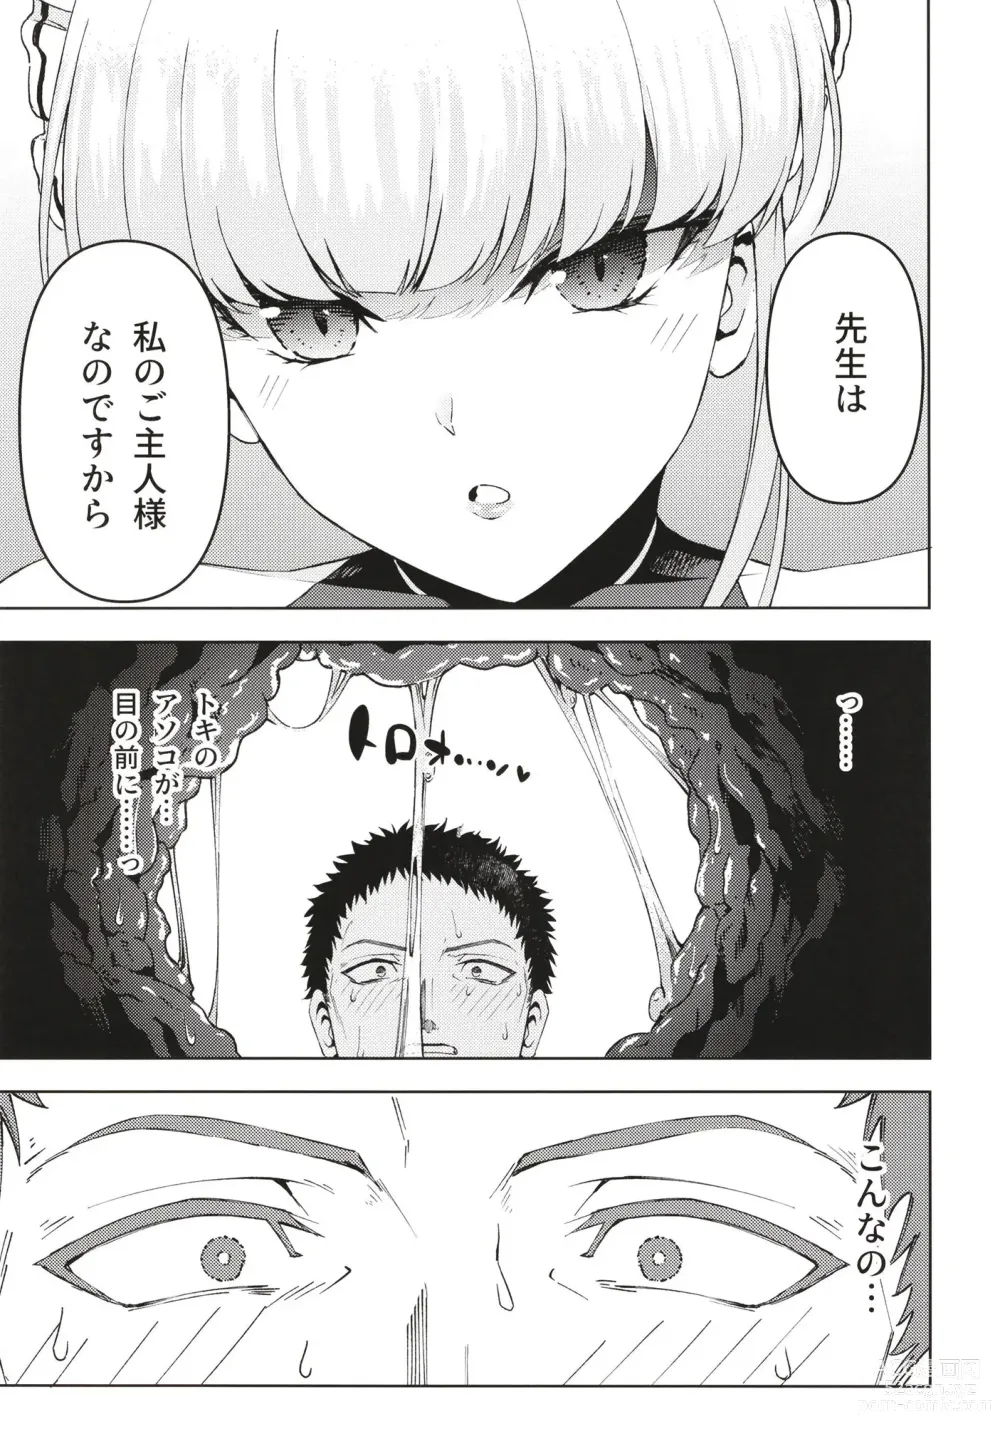 Page 11 of doujinshi Toki, Tokidoki